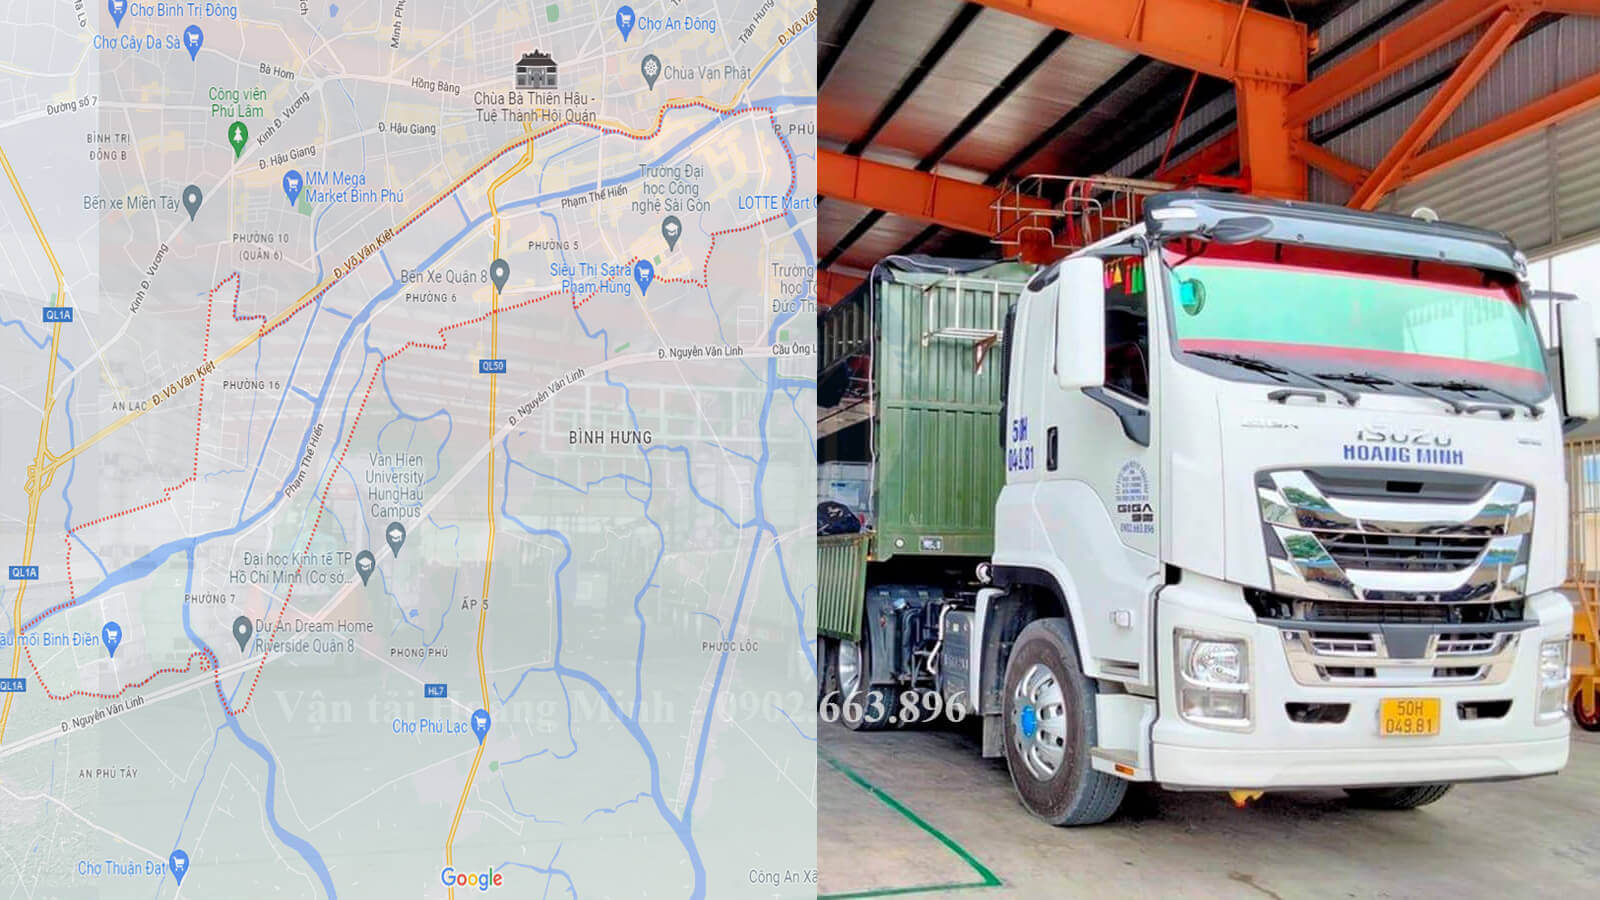 Dịch vụ cho thuê xe tải Hoàng Minh tại Quận 8